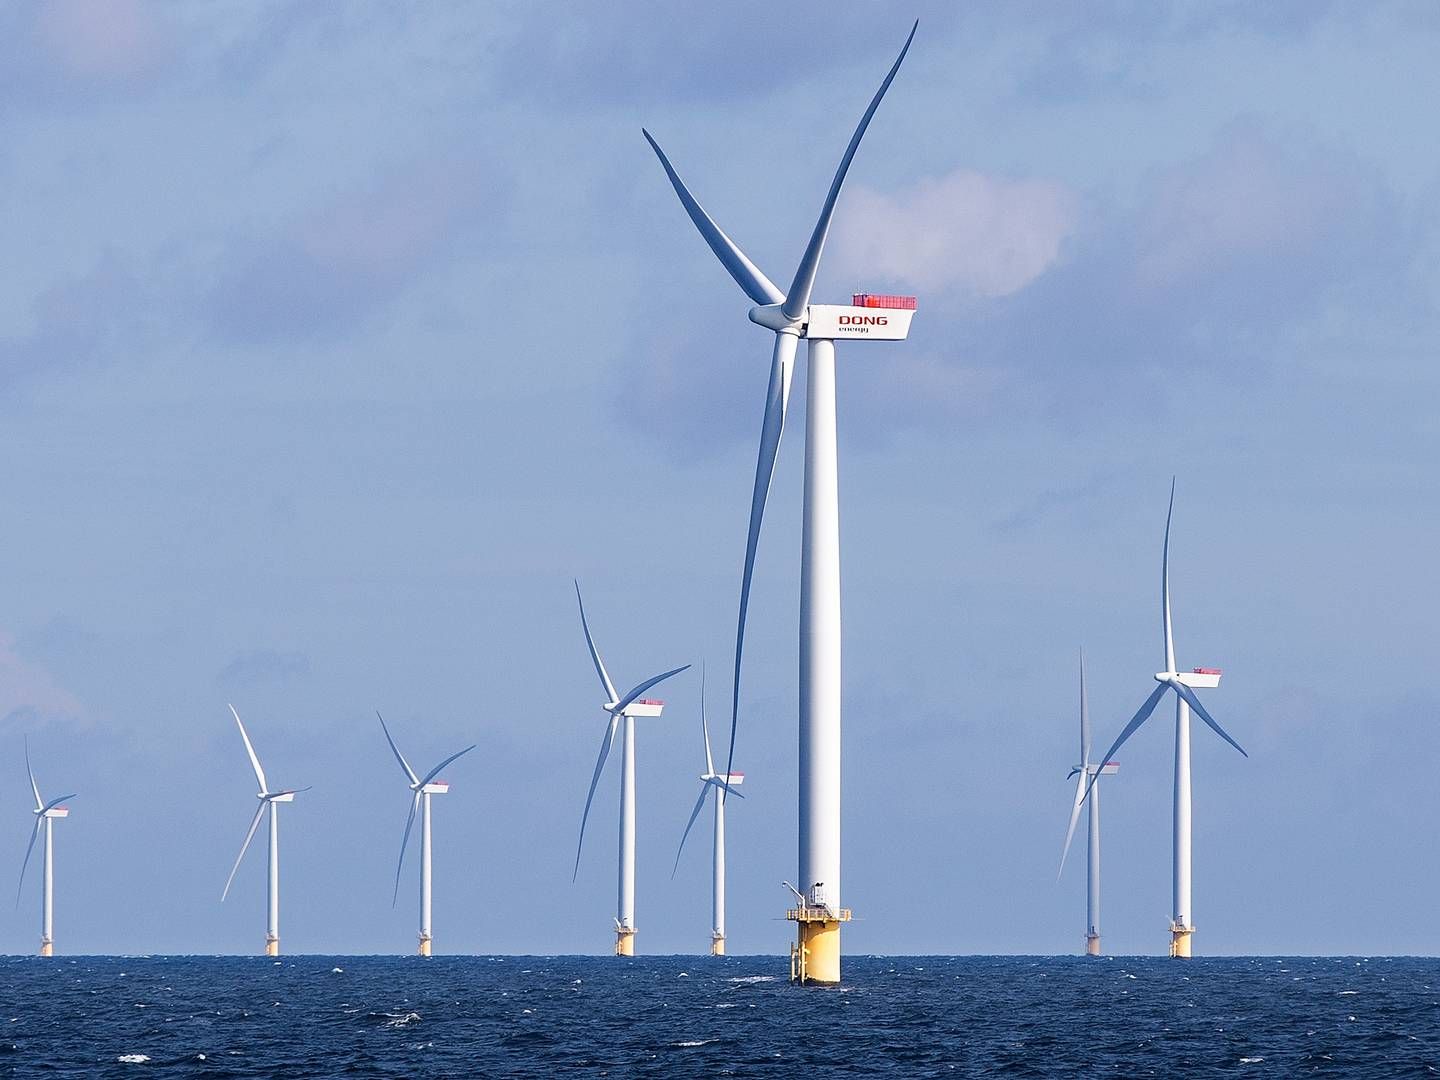 Selskabet ejer i forvejen skibet Wind Innovation, som får selskab af de to brugte skibe i første kvartal af 2024 | Foto: Finn Frandsen/Ritzau Scanpix